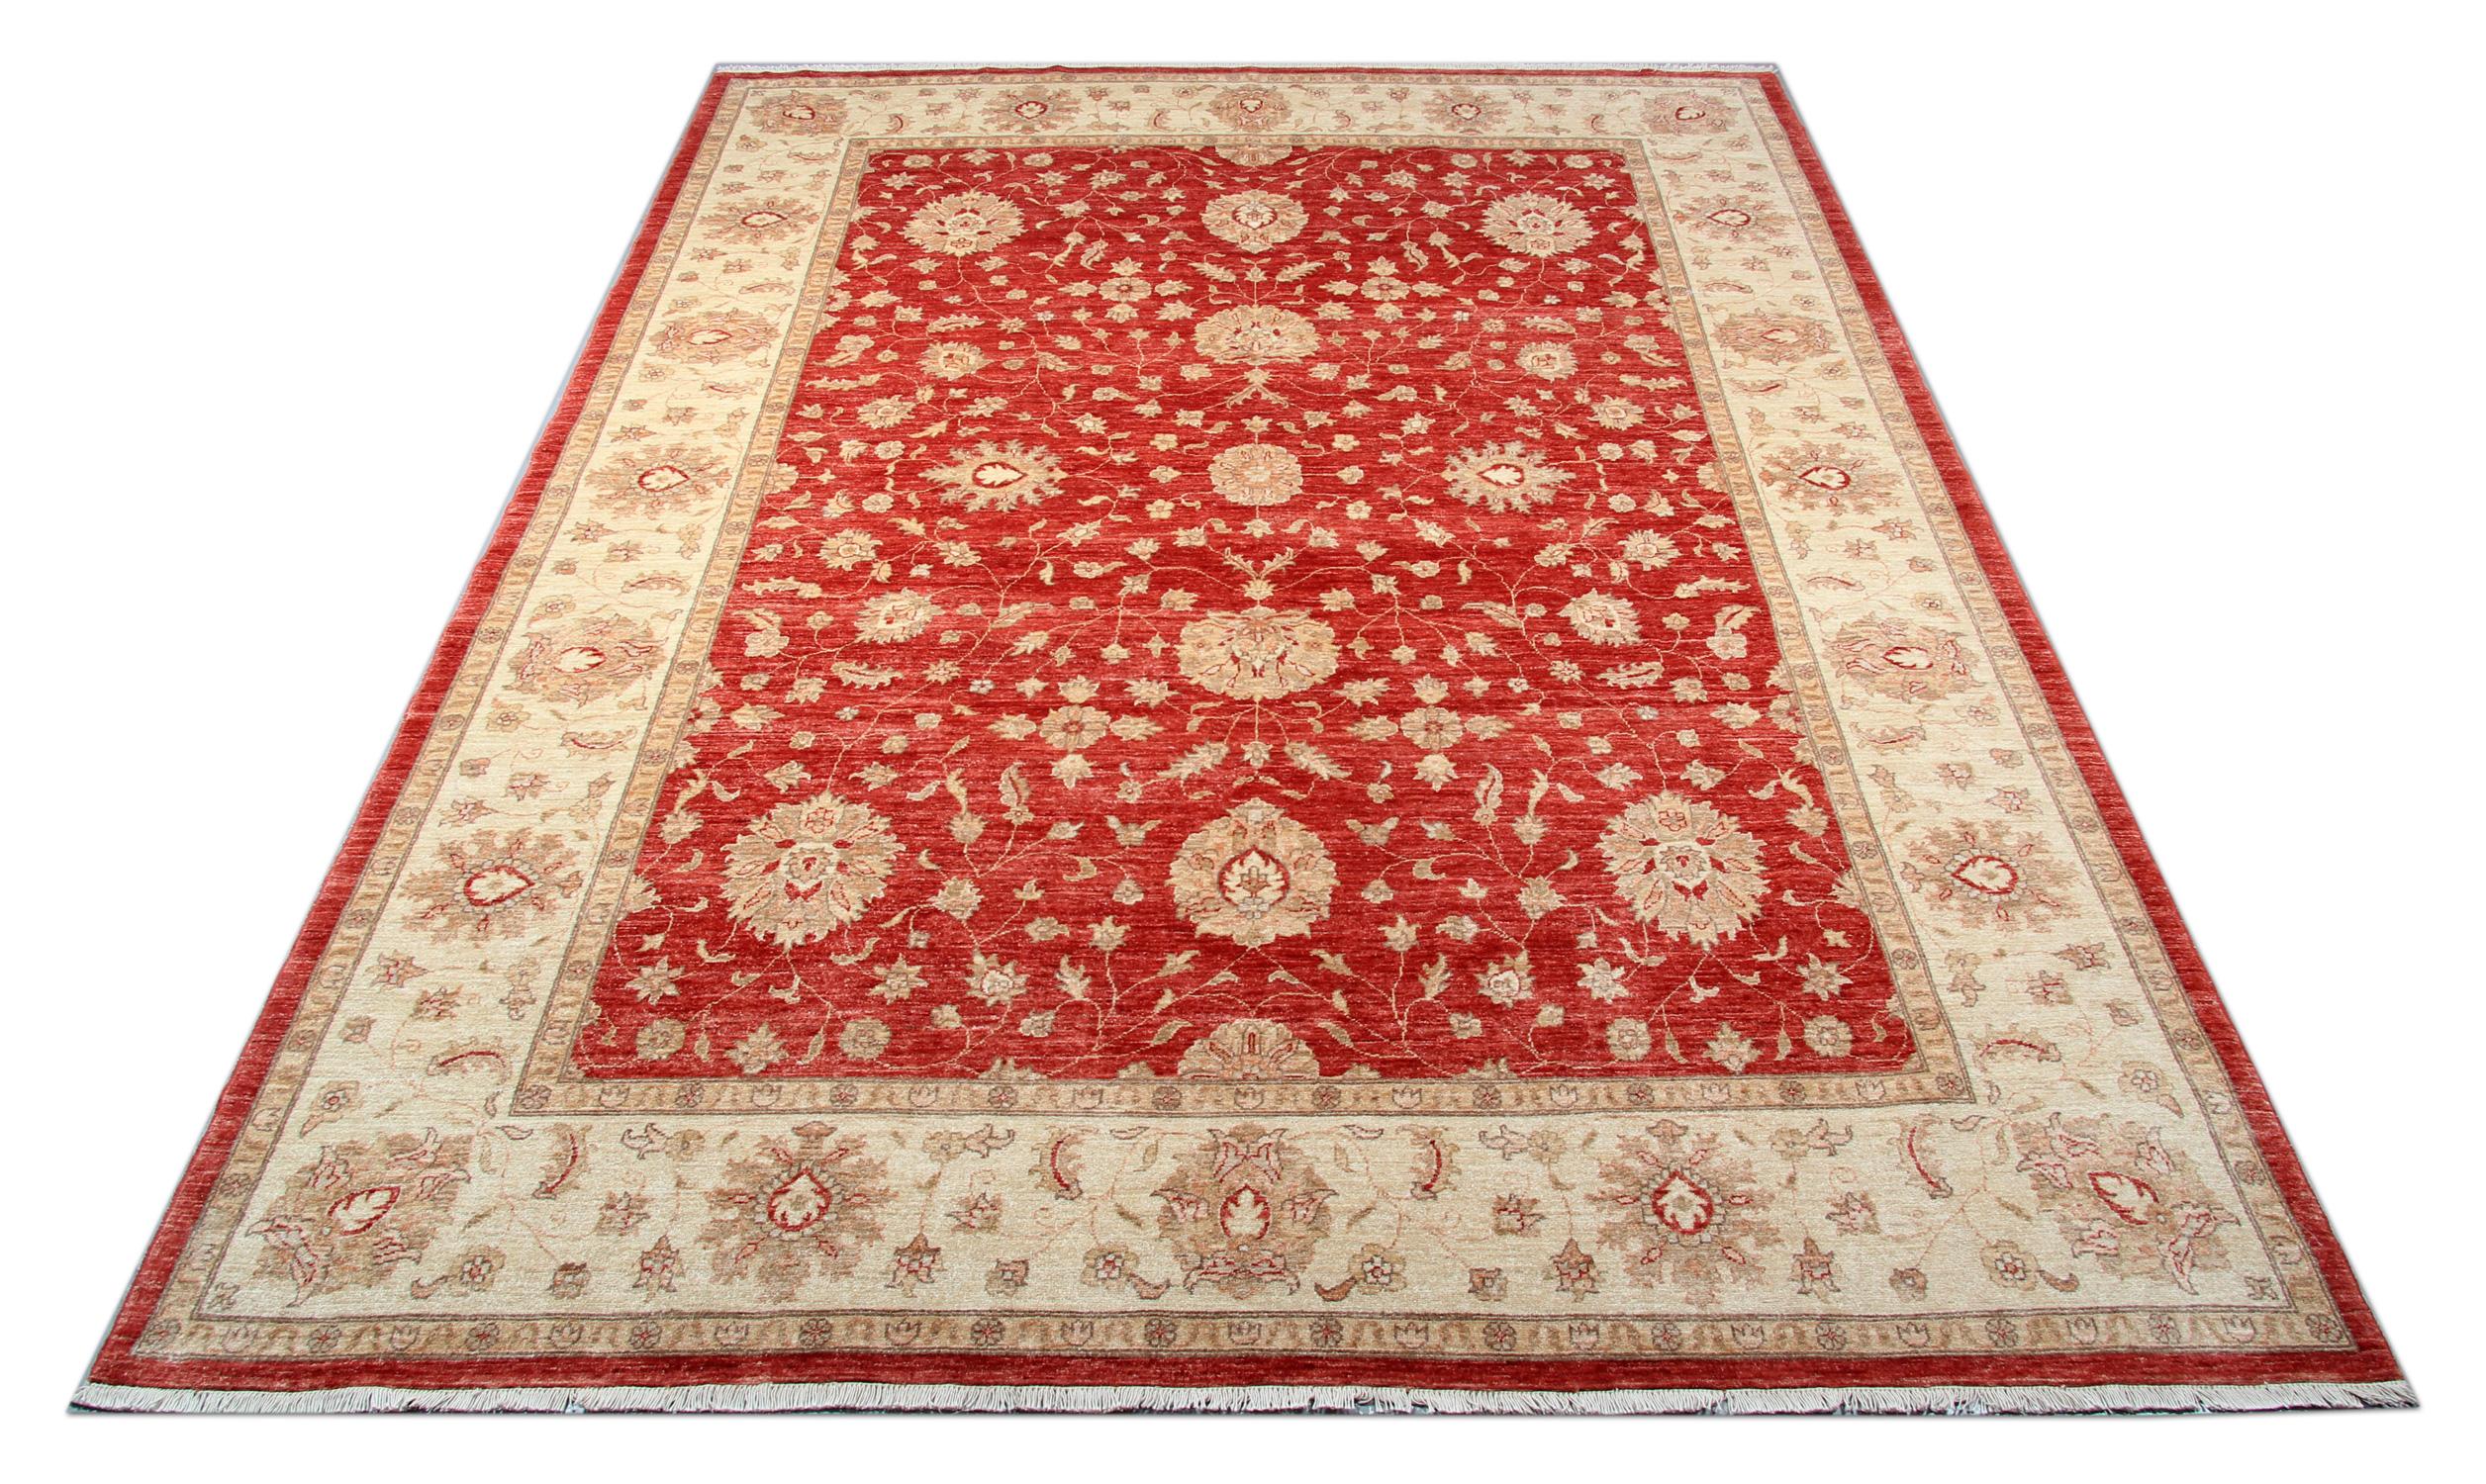 Ce tapis traditionnel Ziegler est l'un de nos tapis les plus luxueux fabriqués sur des métiers à tisser par des maîtres tisserands de tapis afghans. Ce tapis crème est fabriqué avec de la laine filée à la main, les couleurs sont produites à partir